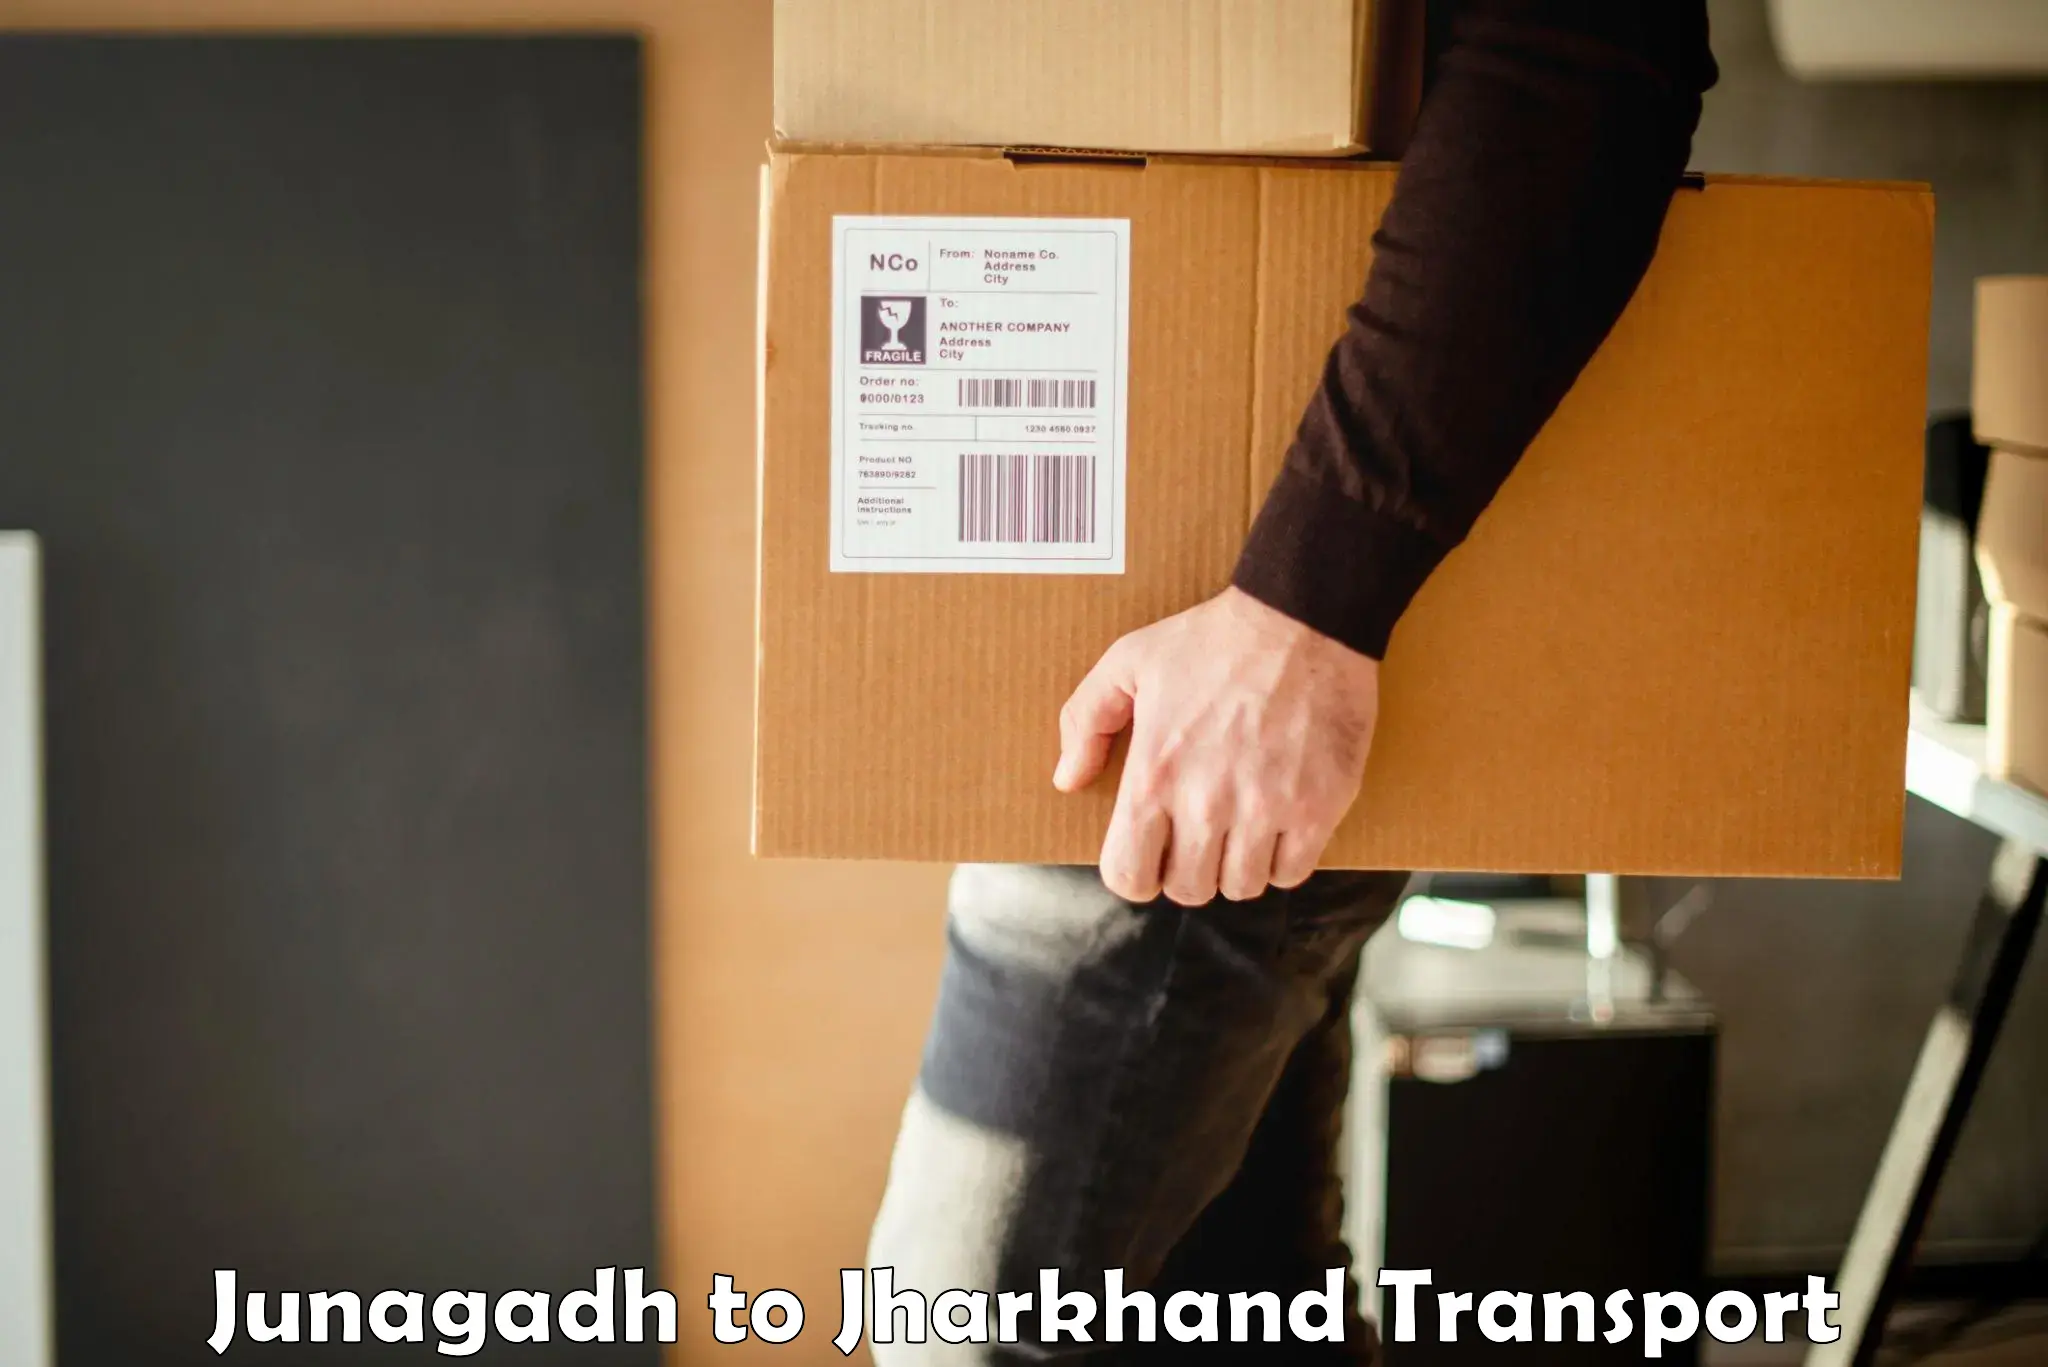 Transport shared services Junagadh to Jharkhand